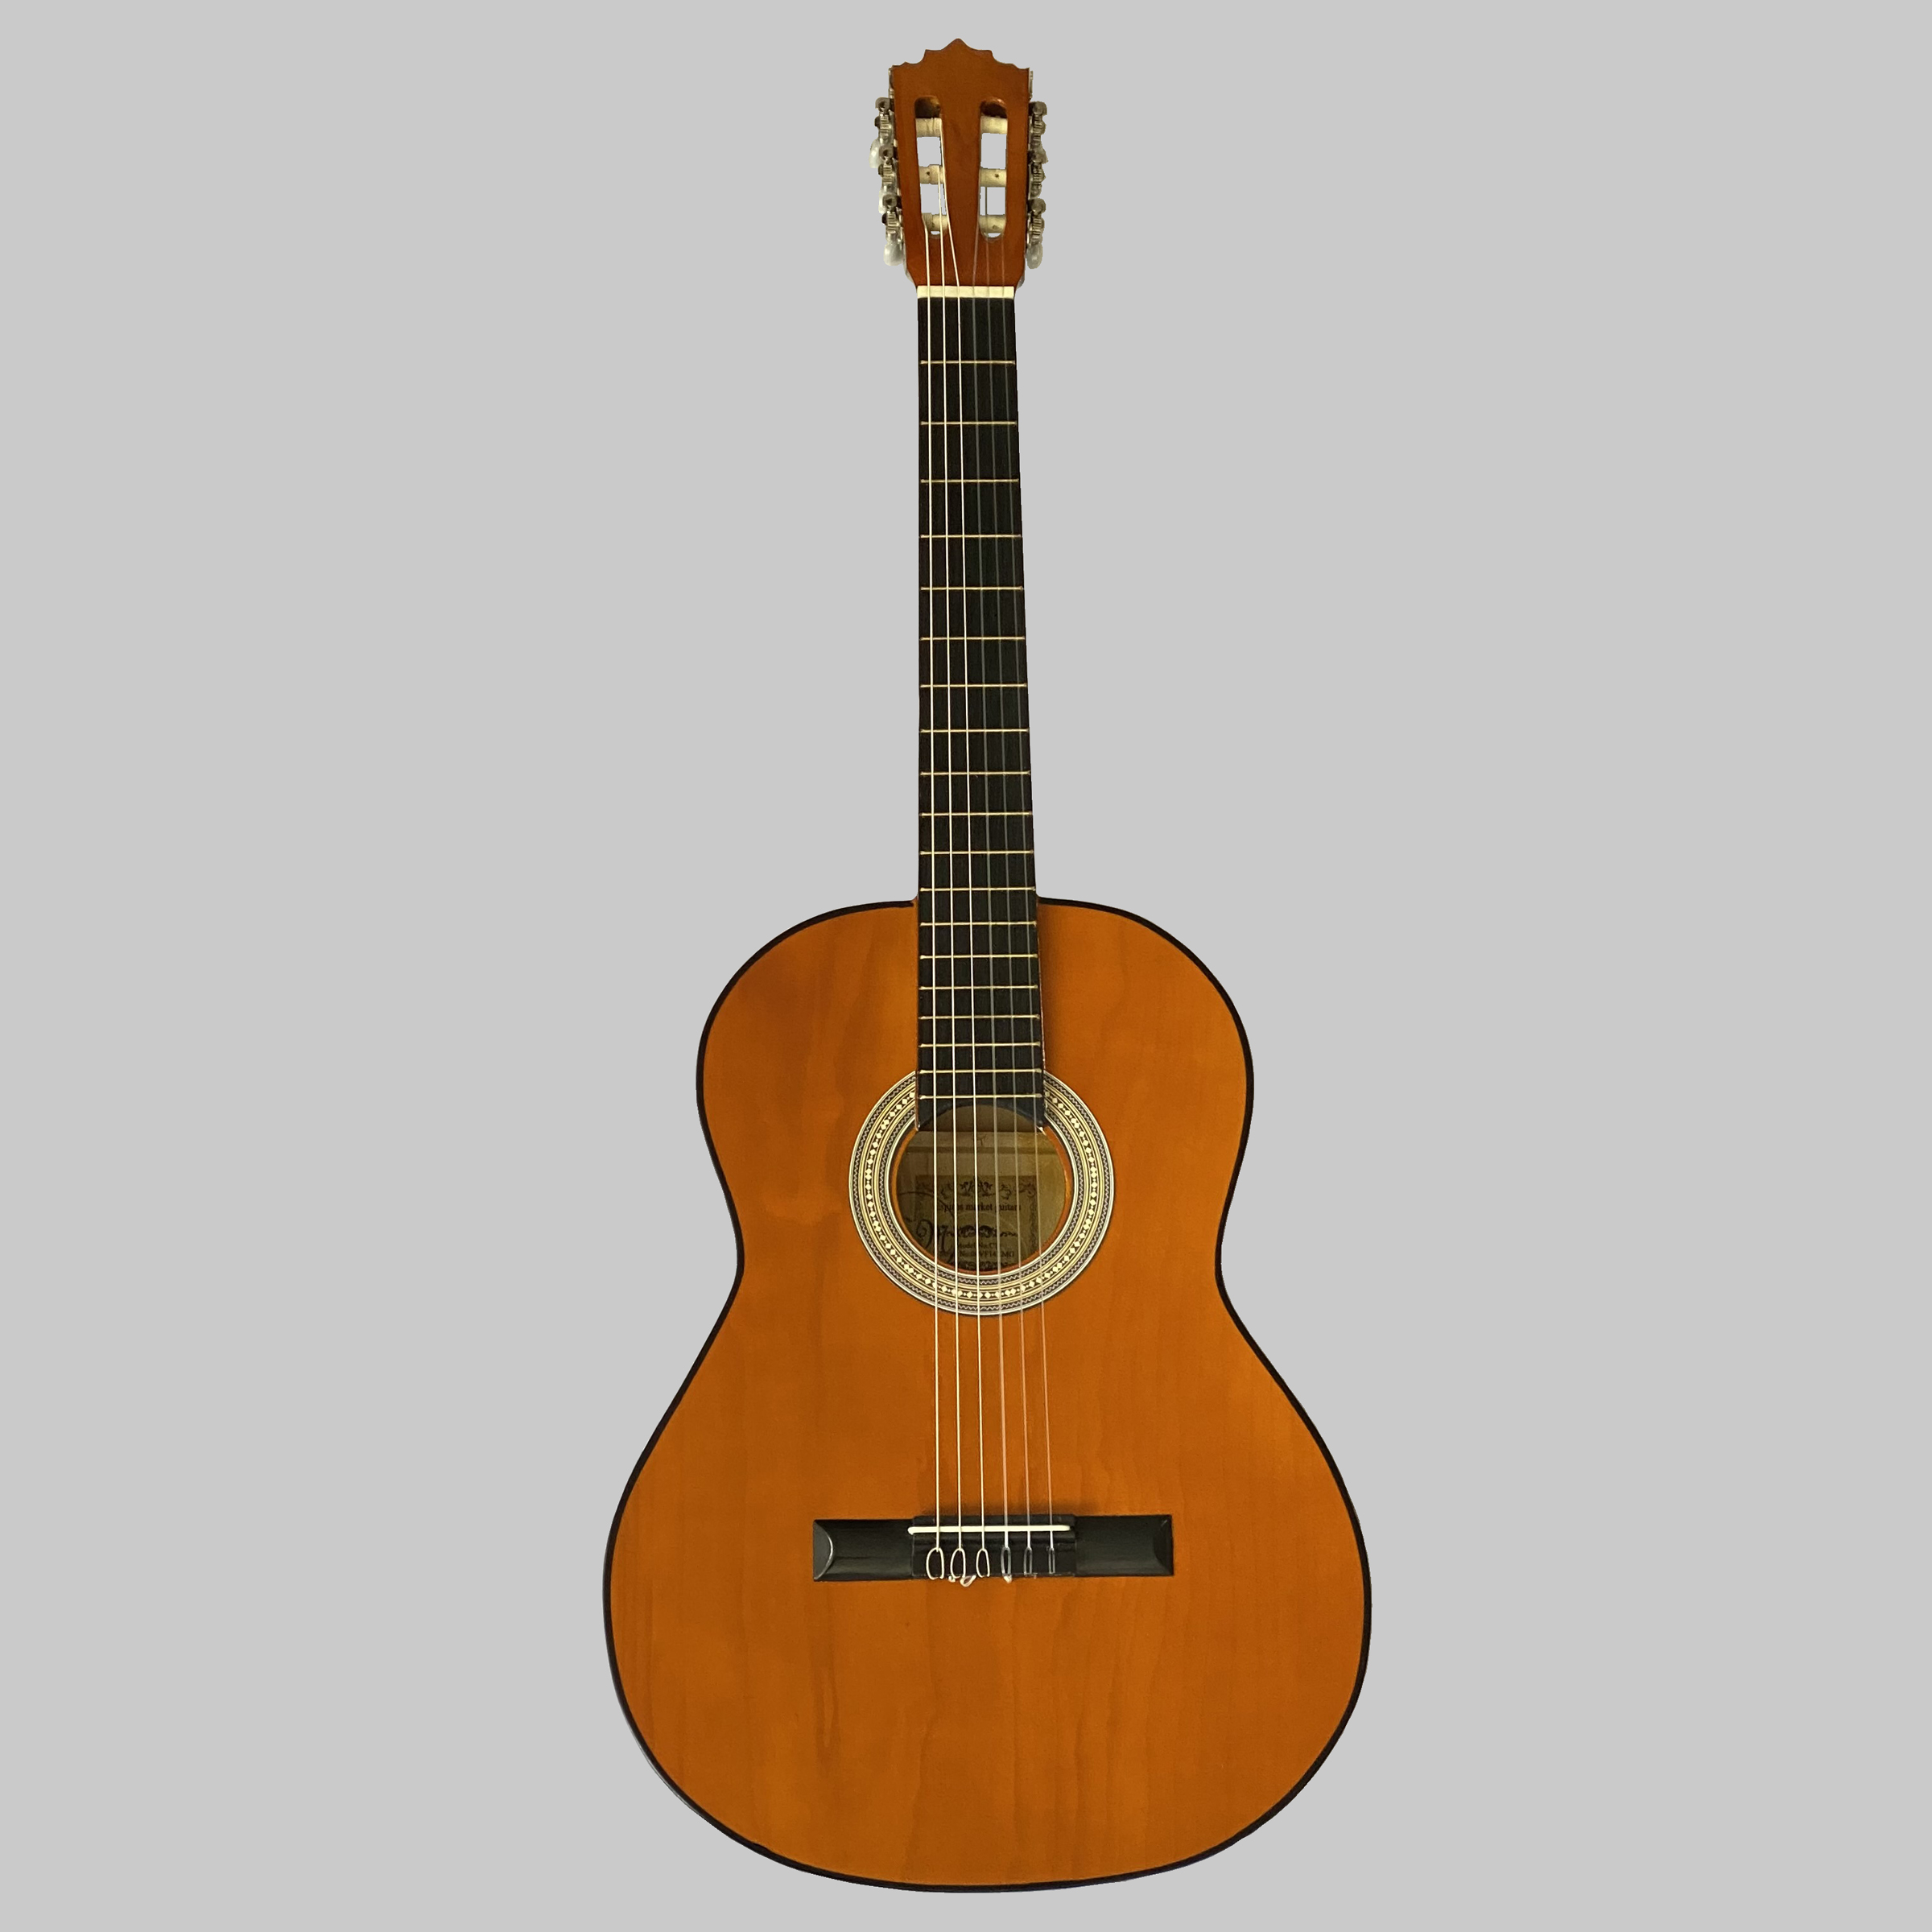 نکته خرید - قیمت روز گیتار کلاسیک اسپیروس مارکت مدل C71 خرید